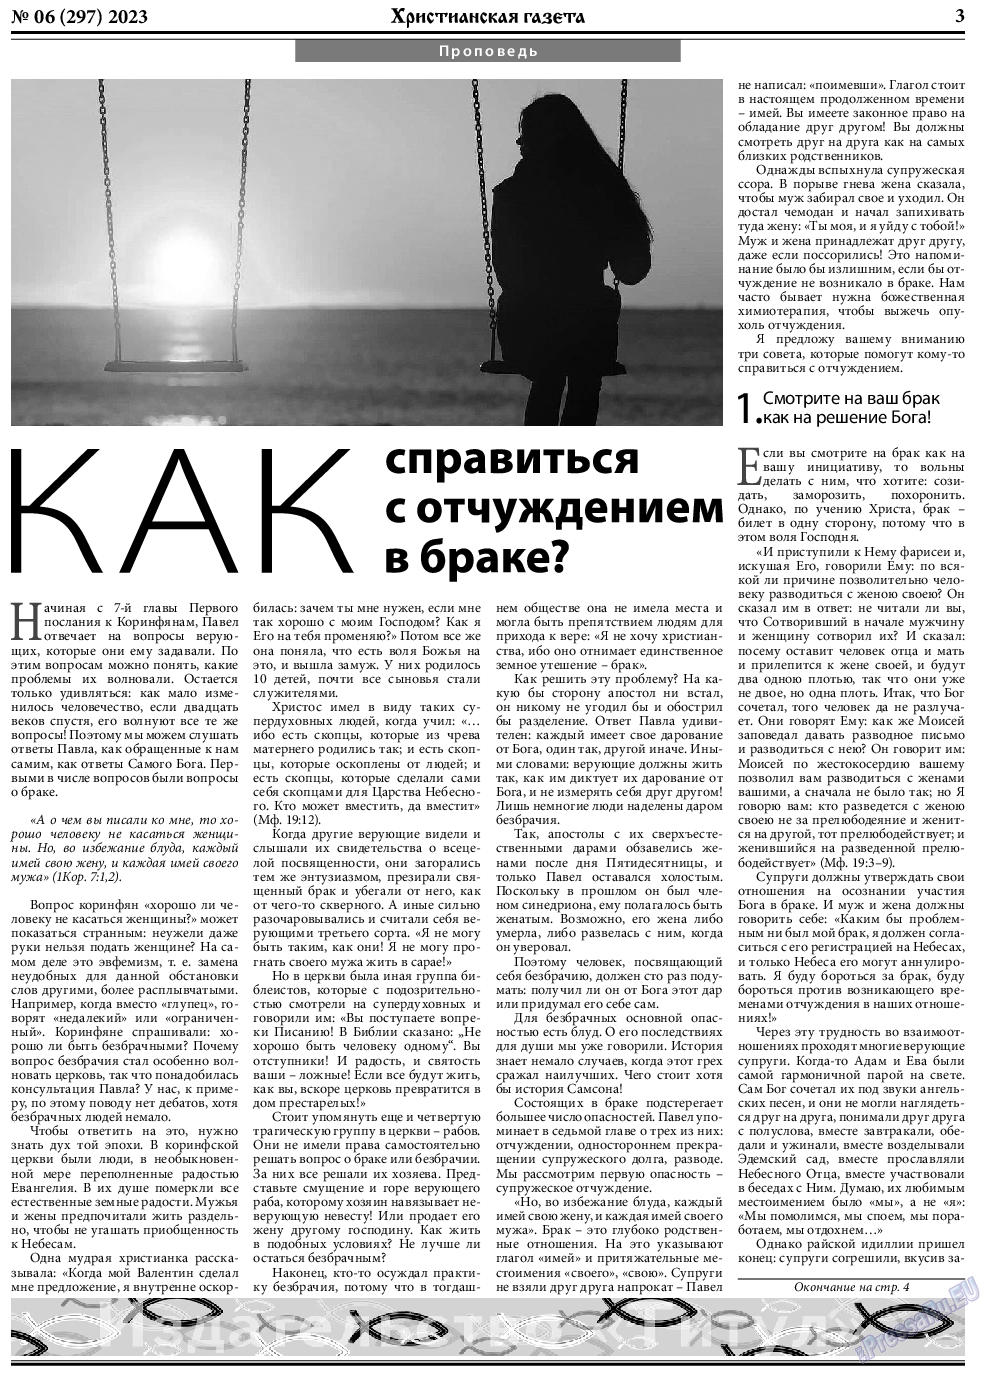 Христианская газета, газета. 2023 №6 стр.3